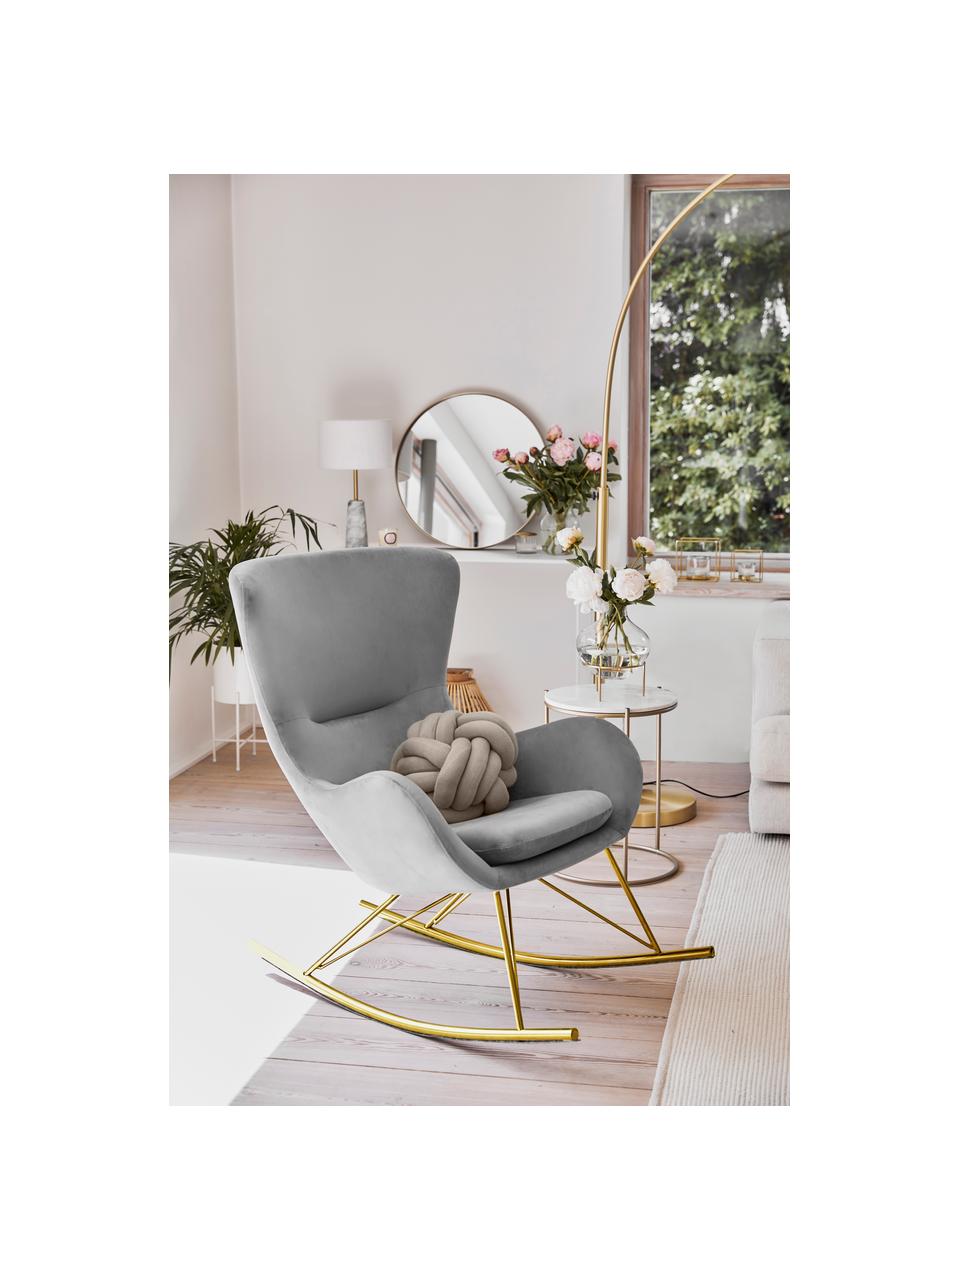 Fluwelen schommelstoel Wing in grijs met metalen poten, Bekleding: fluweel (polyester), Frame: gegalvaniseerd metaal, Fluweel grijs, goudkleurig, B 76 x D 108 cm